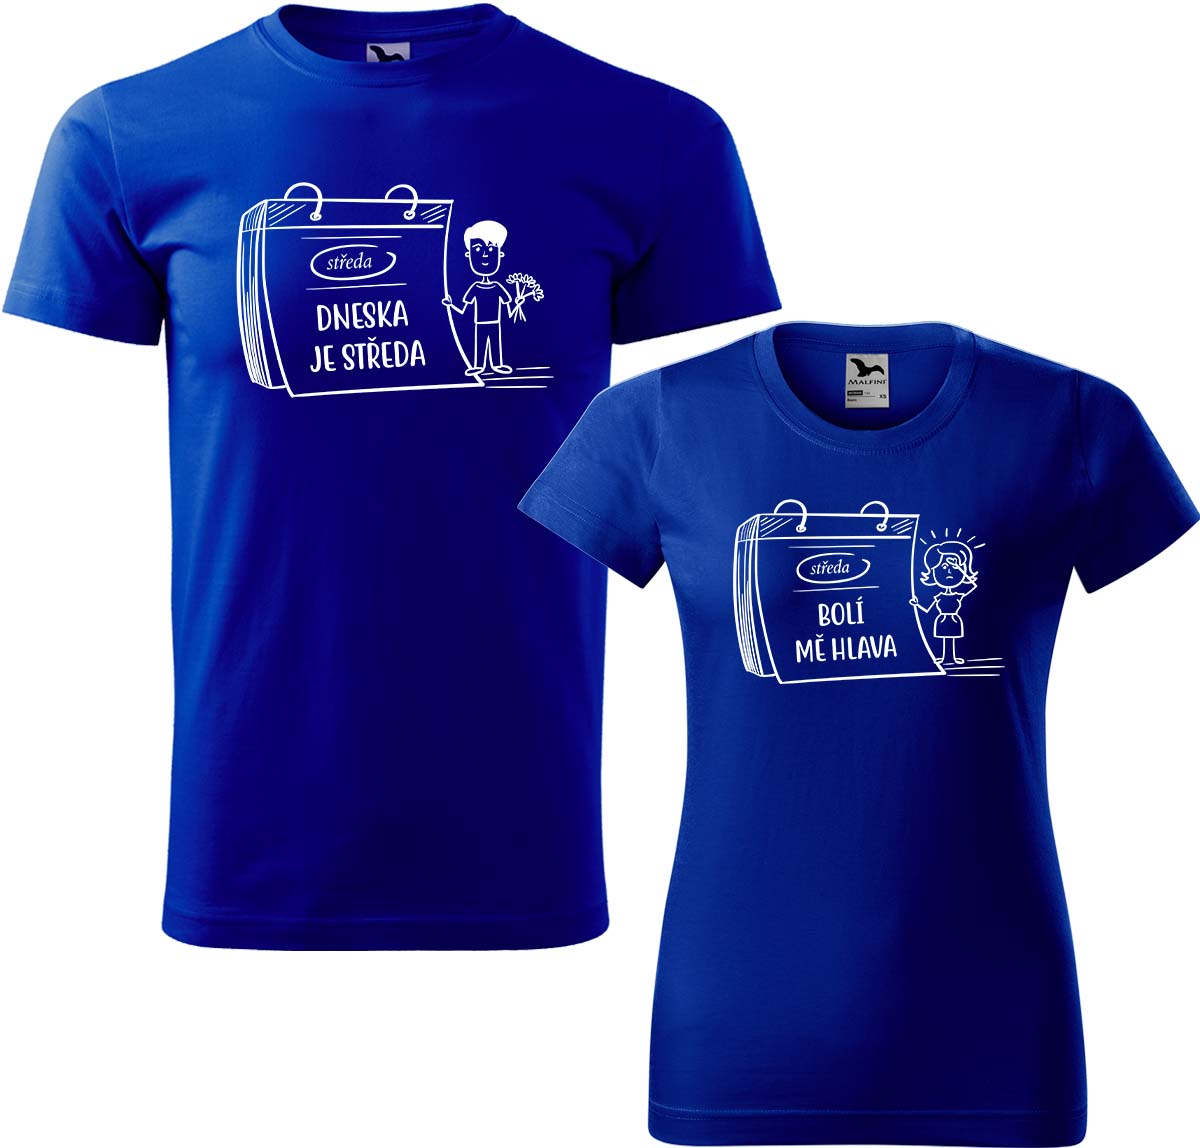 Trička pro páry - Dneska je středa Barva: Královská modrá (05), Velikost dámské tričko: XL, Velikost pánské tričko: XL